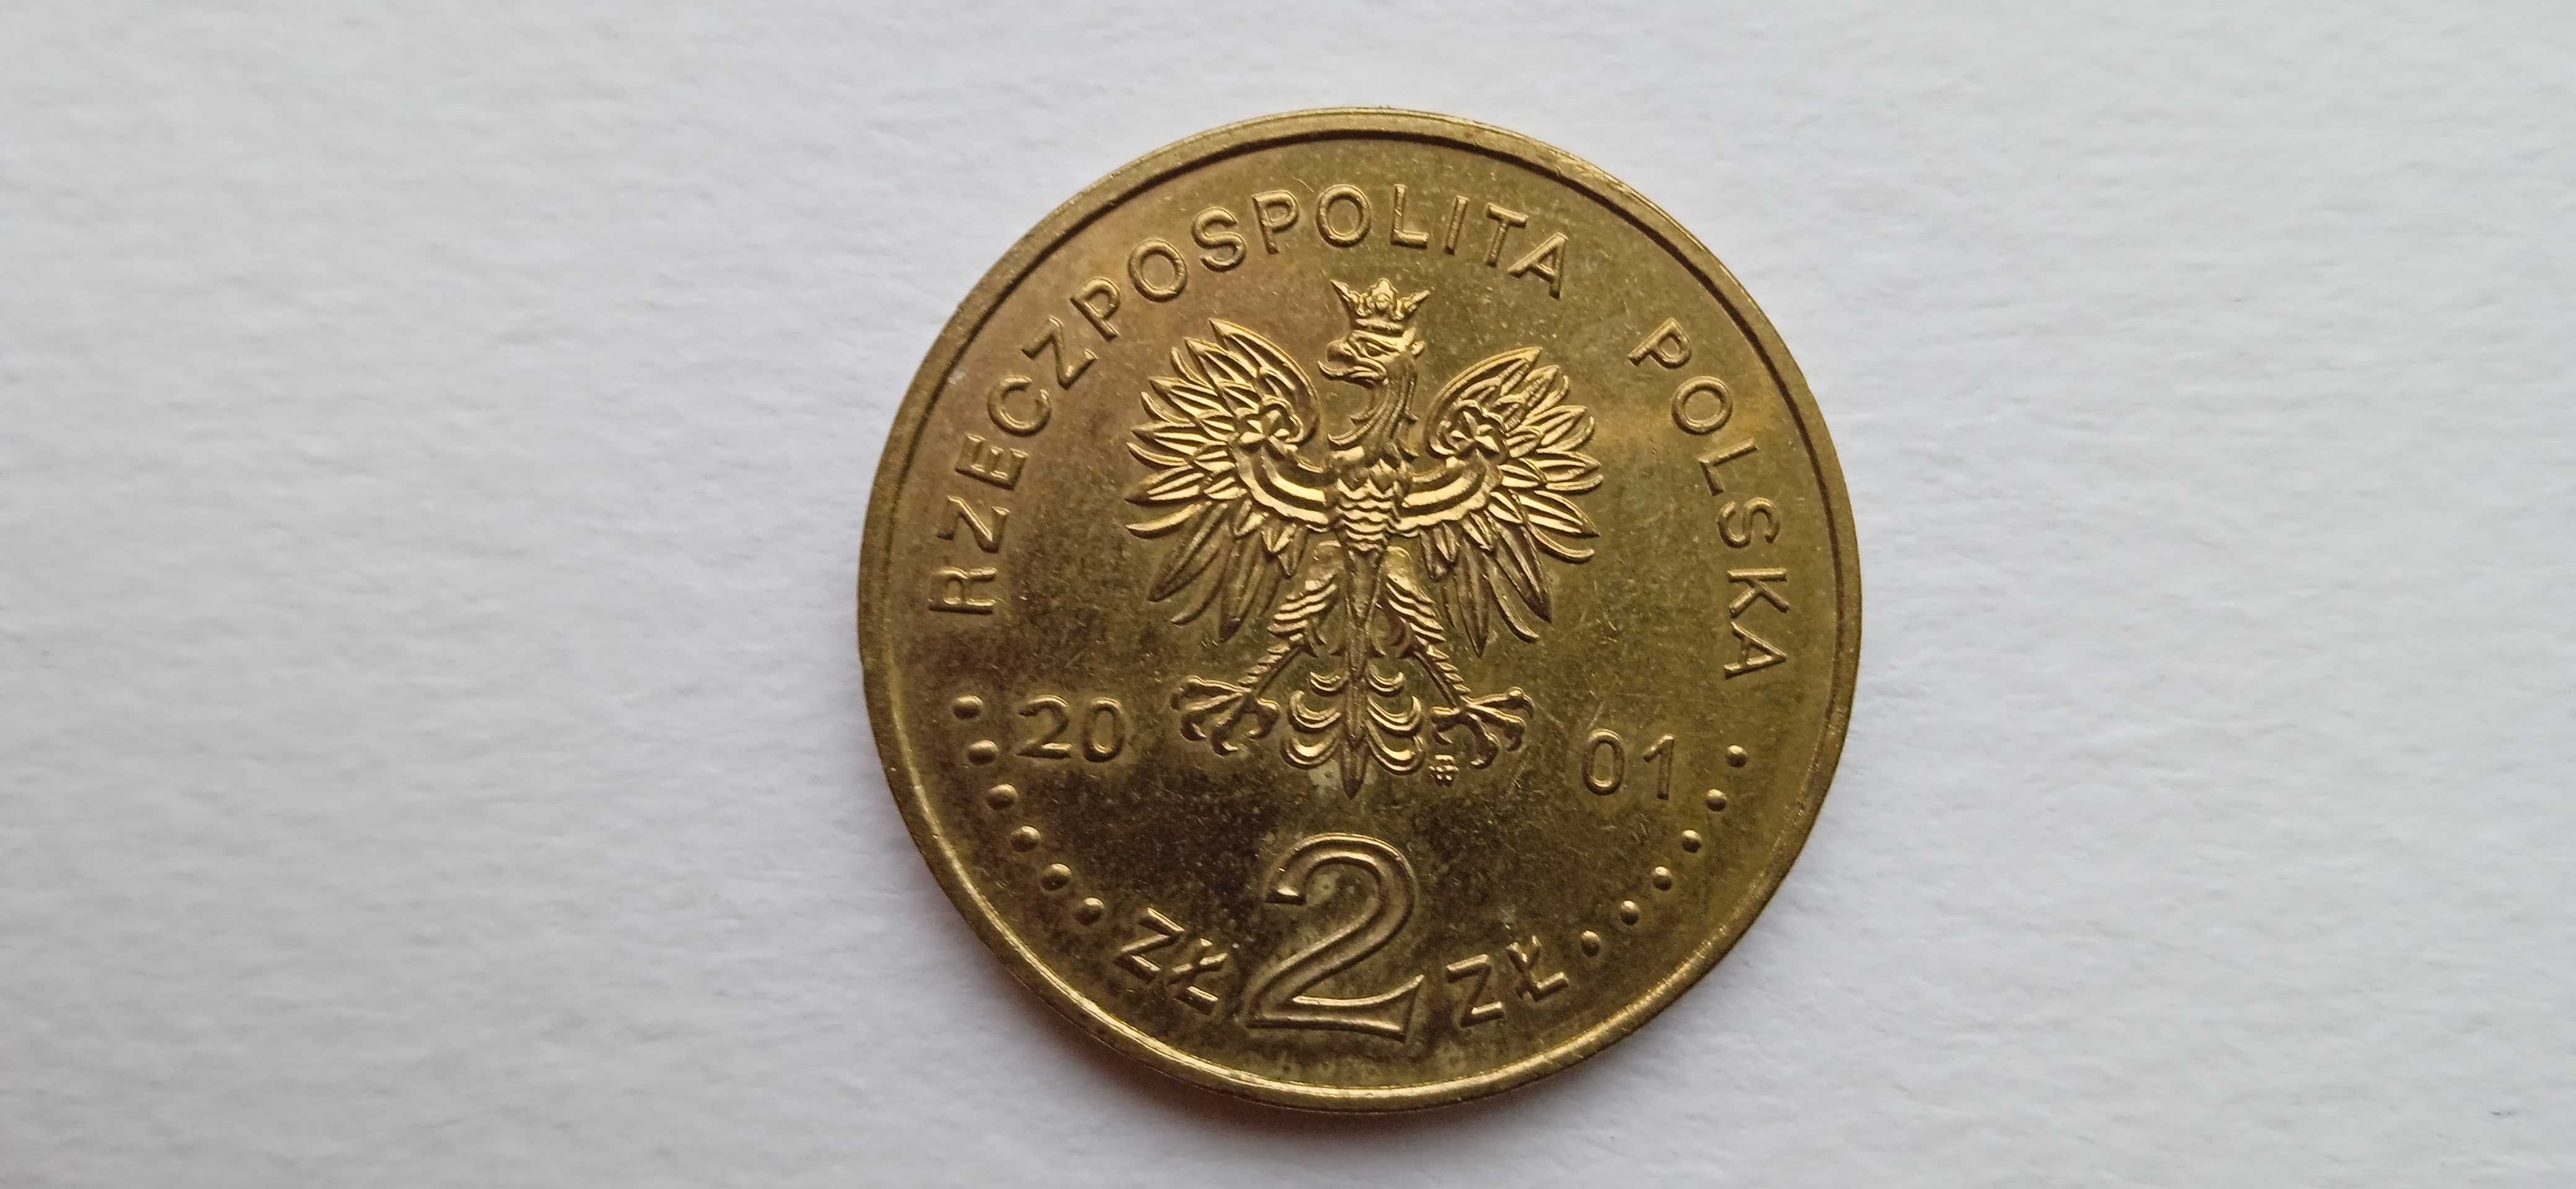 Moneta 2zł Szlak Bursztynowy 2001 rok.